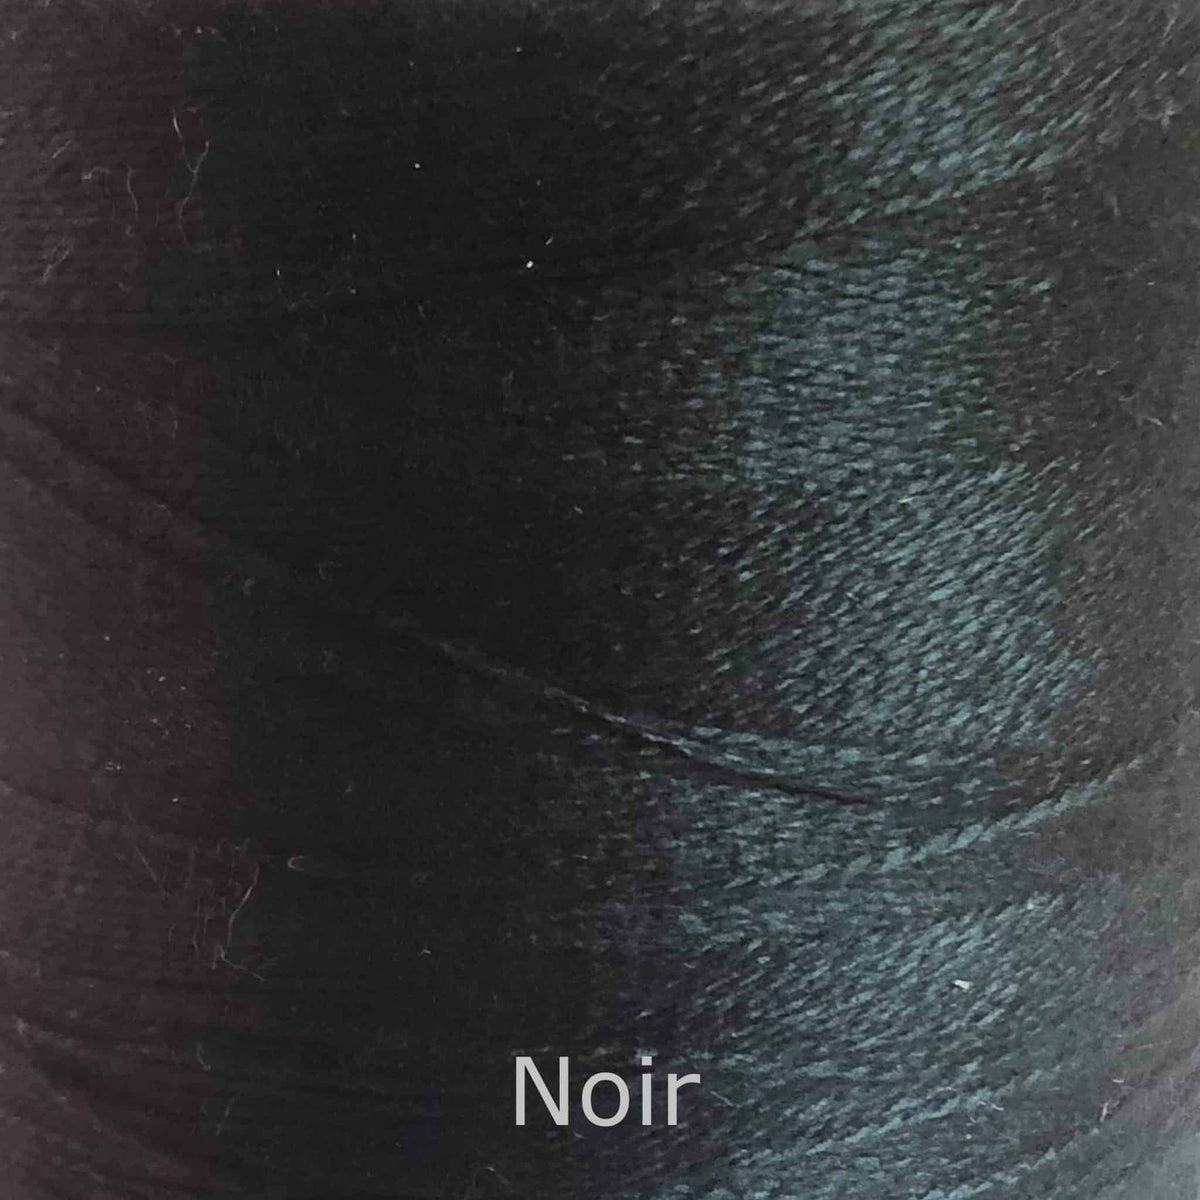 16/2 cotton weaving yarn noir black